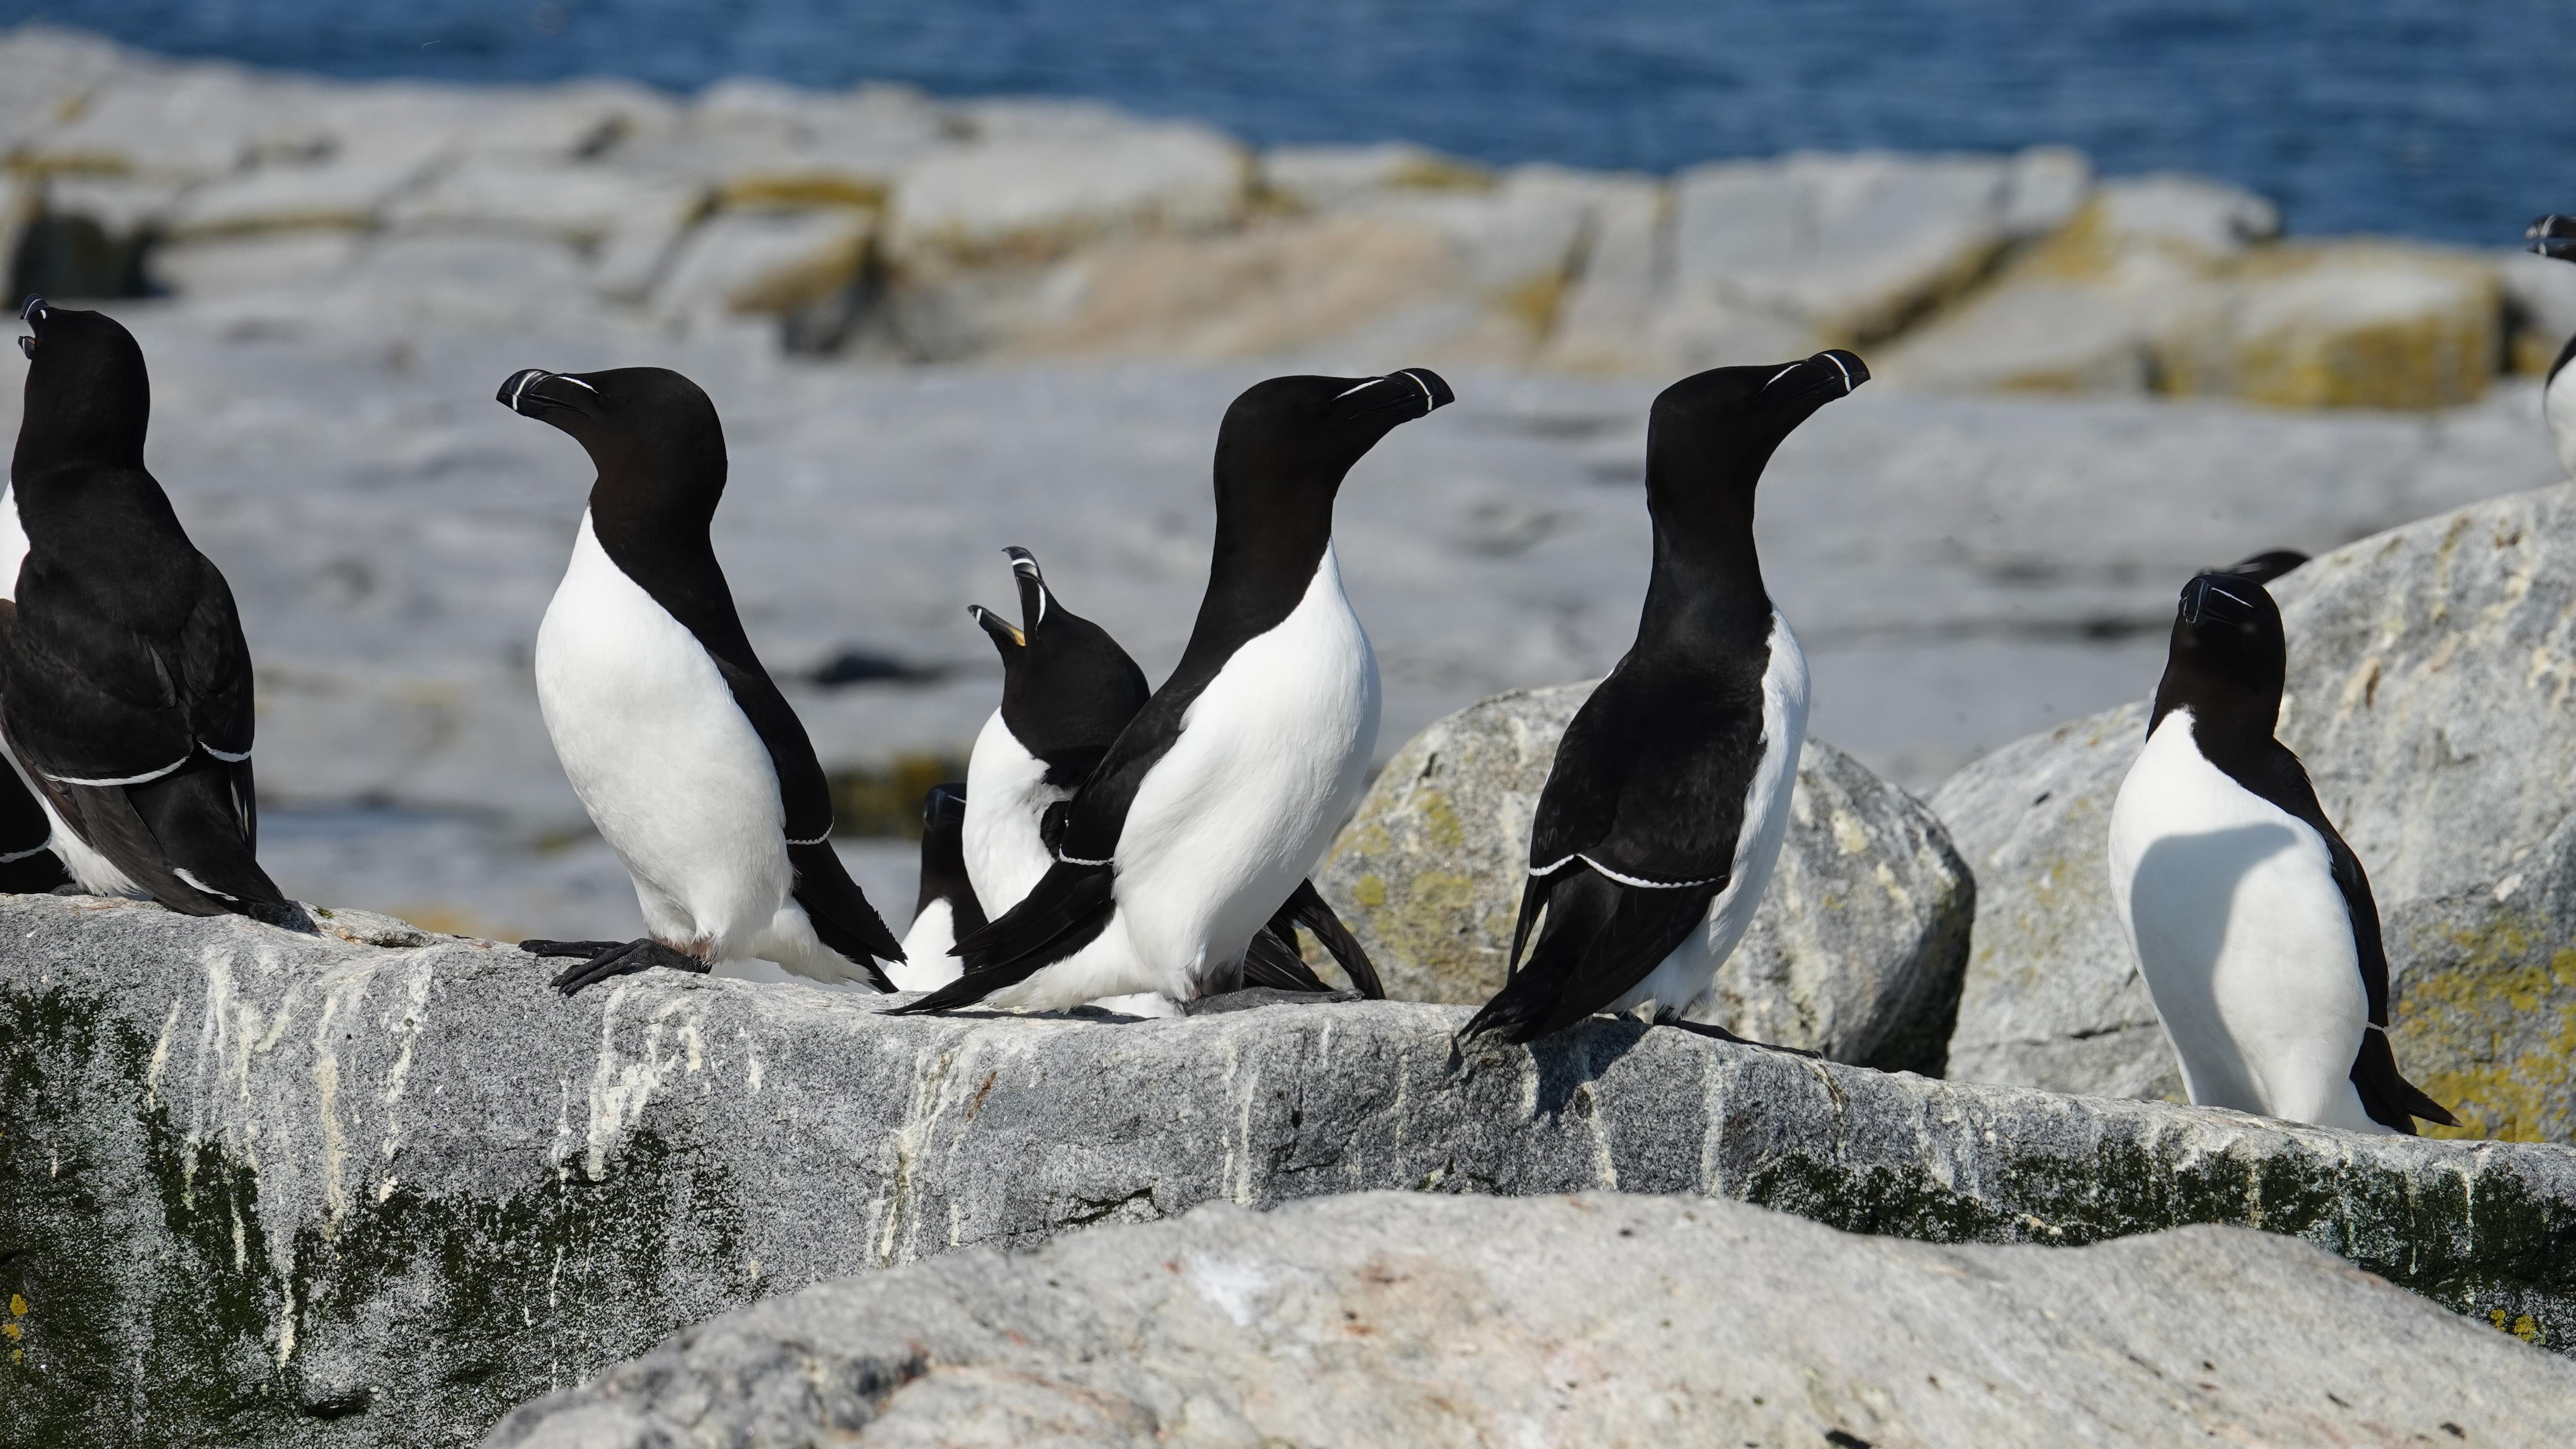 La disparition du grand pingouin - Québec Science